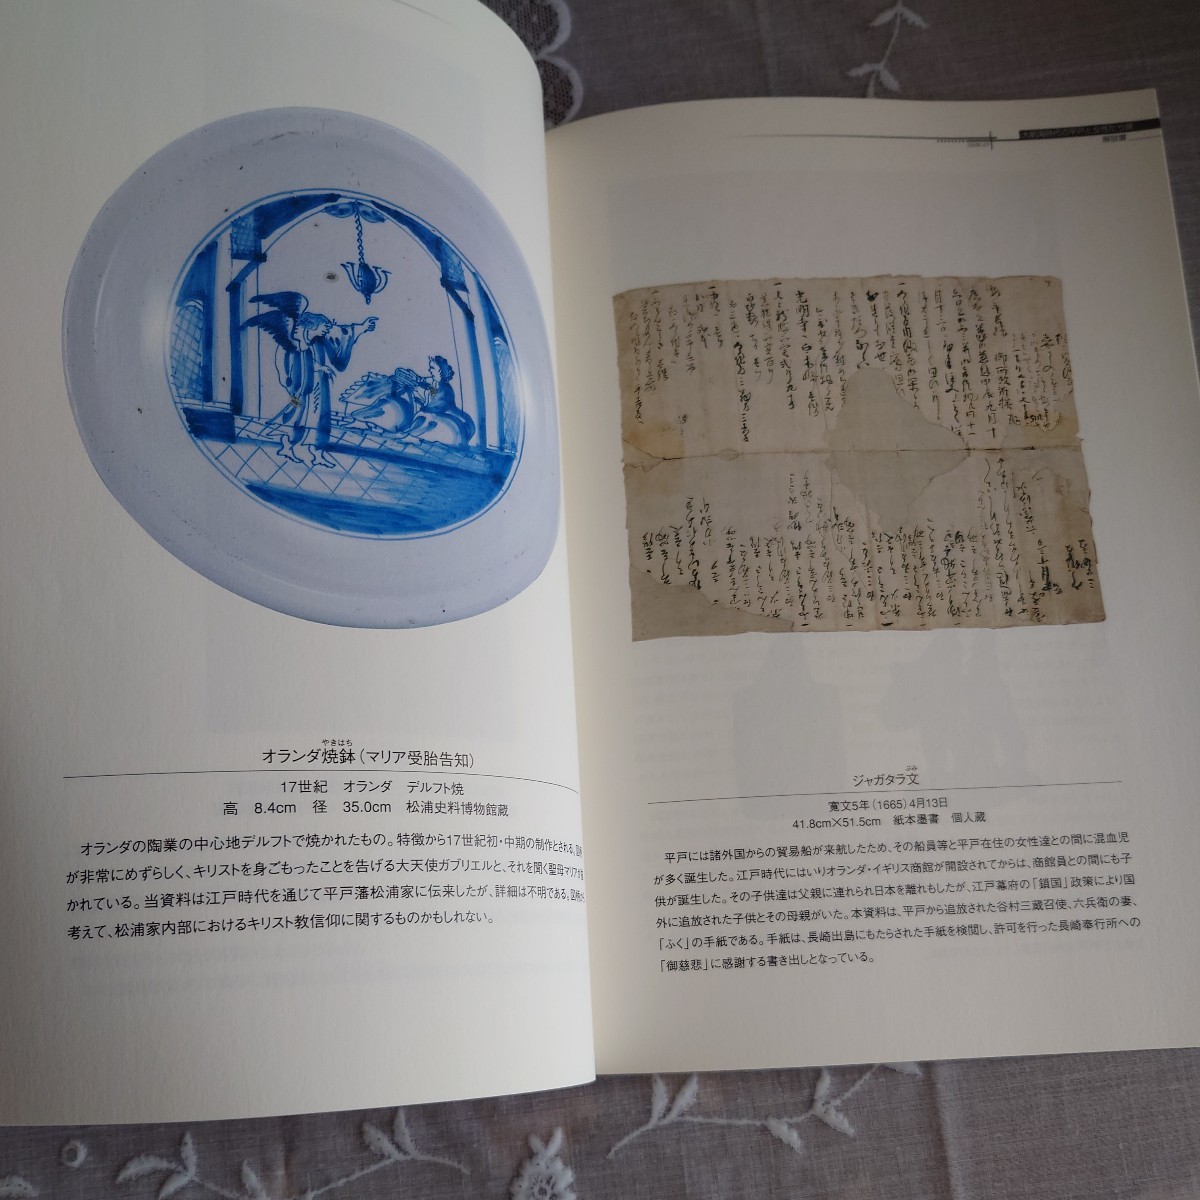 海と船の企画展解説書「大航海時代の平戸と女性たち展」2006年、松浦史料博物館、図版カラー、15P_画像5